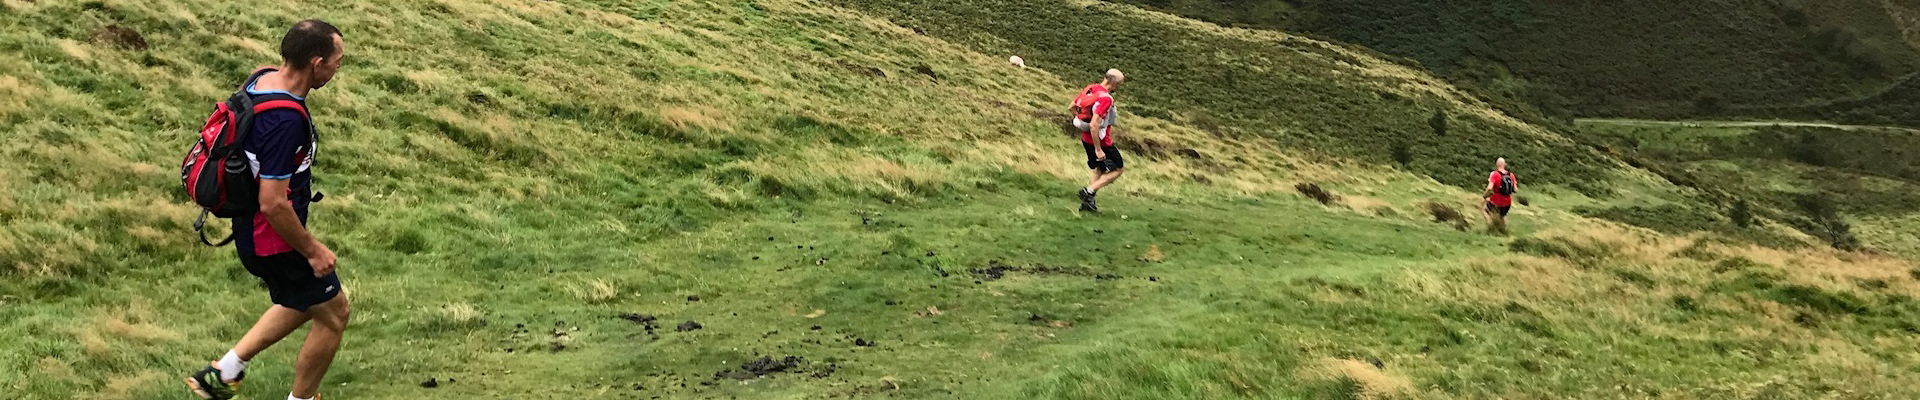 Stowe Trail Run #1 2018